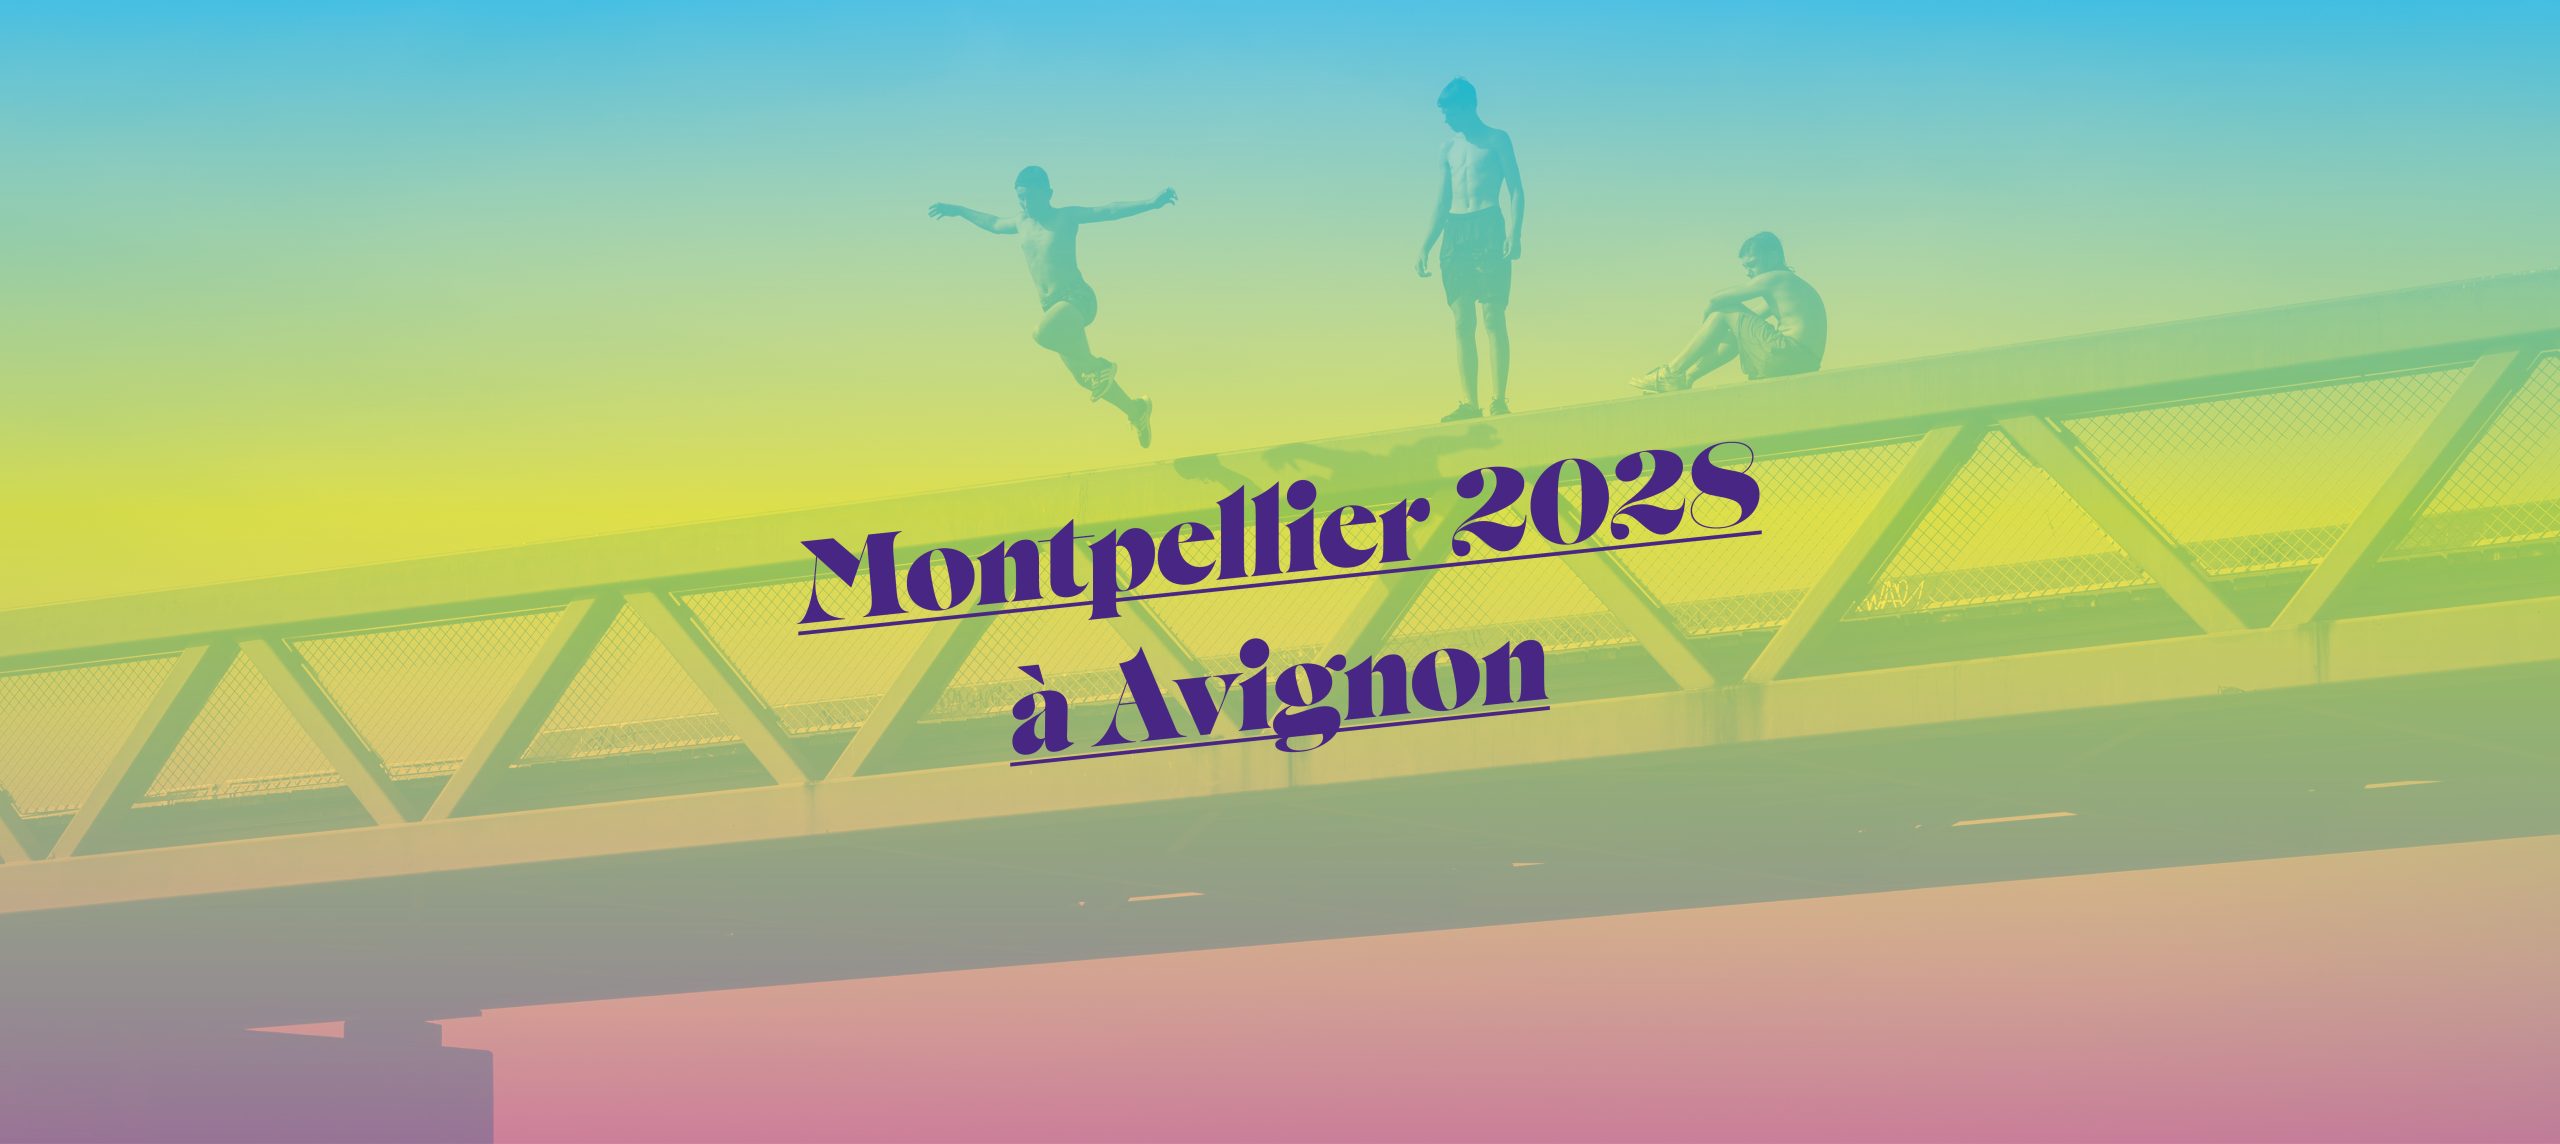 Montpellier 2028 à Avignon